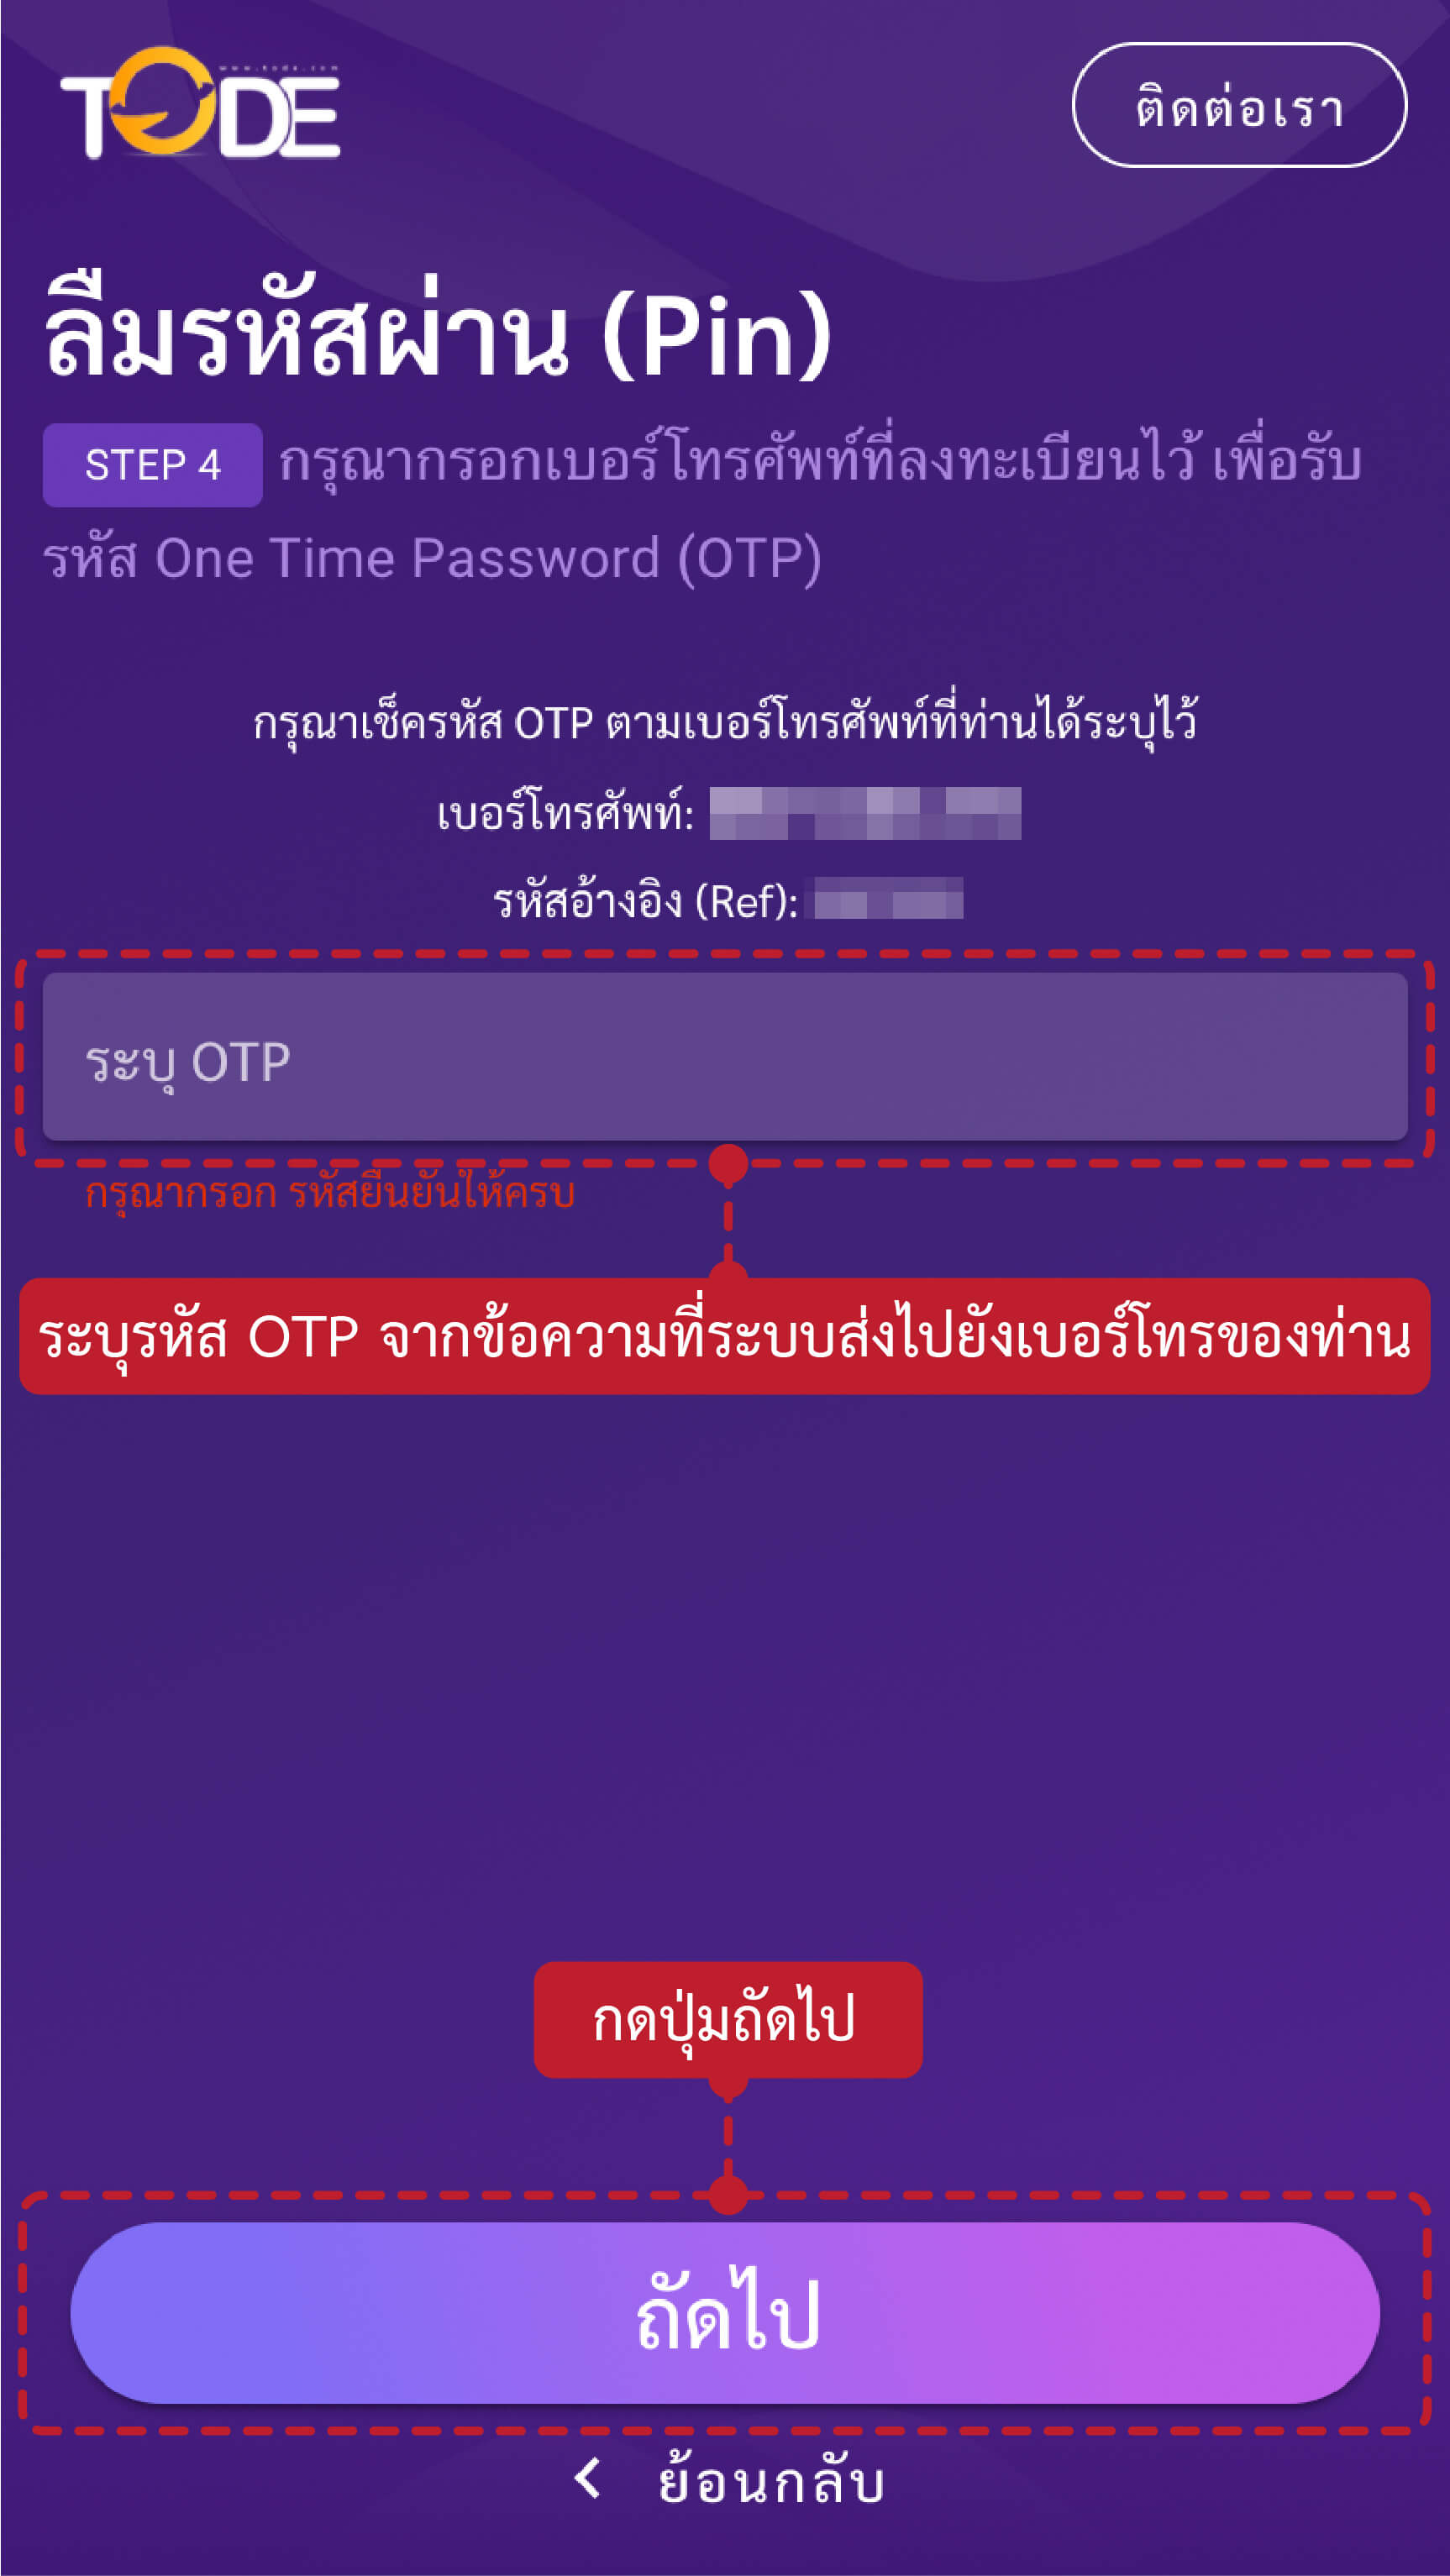 ขั้นตอนวิธีรีรหัสผ่านหากลืมรหัสผ่าน เว็บโต๊ดเว็บแทงหวยอันดับ1ของไทยสูงสุดบาทละ1200